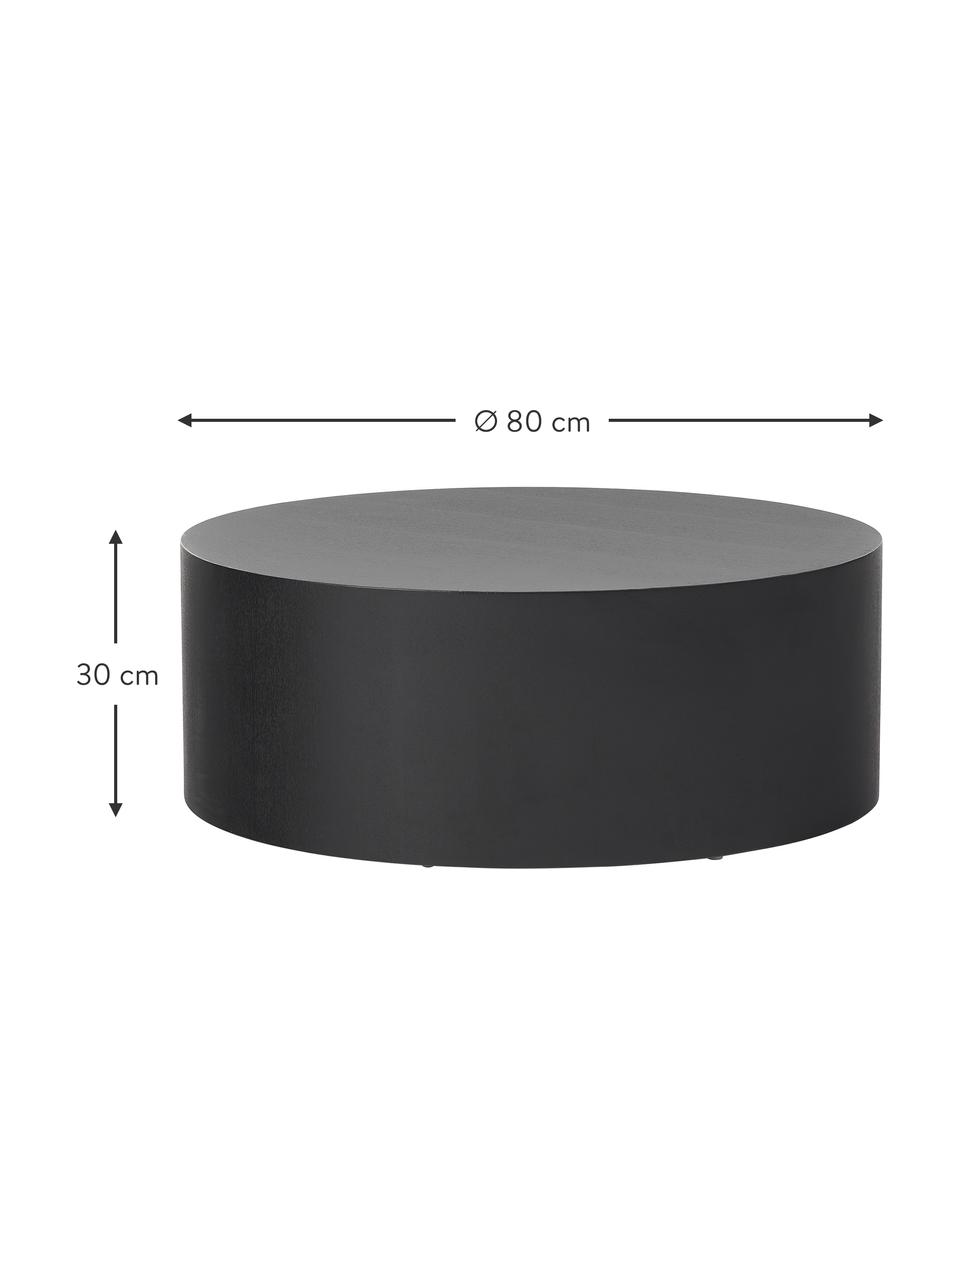 Table basse ronde en bois Dan, MDF (panneau en fibres de bois à densité moyenne) avec placage en frêne, Noir, Ø 80 x haut. 30 cm